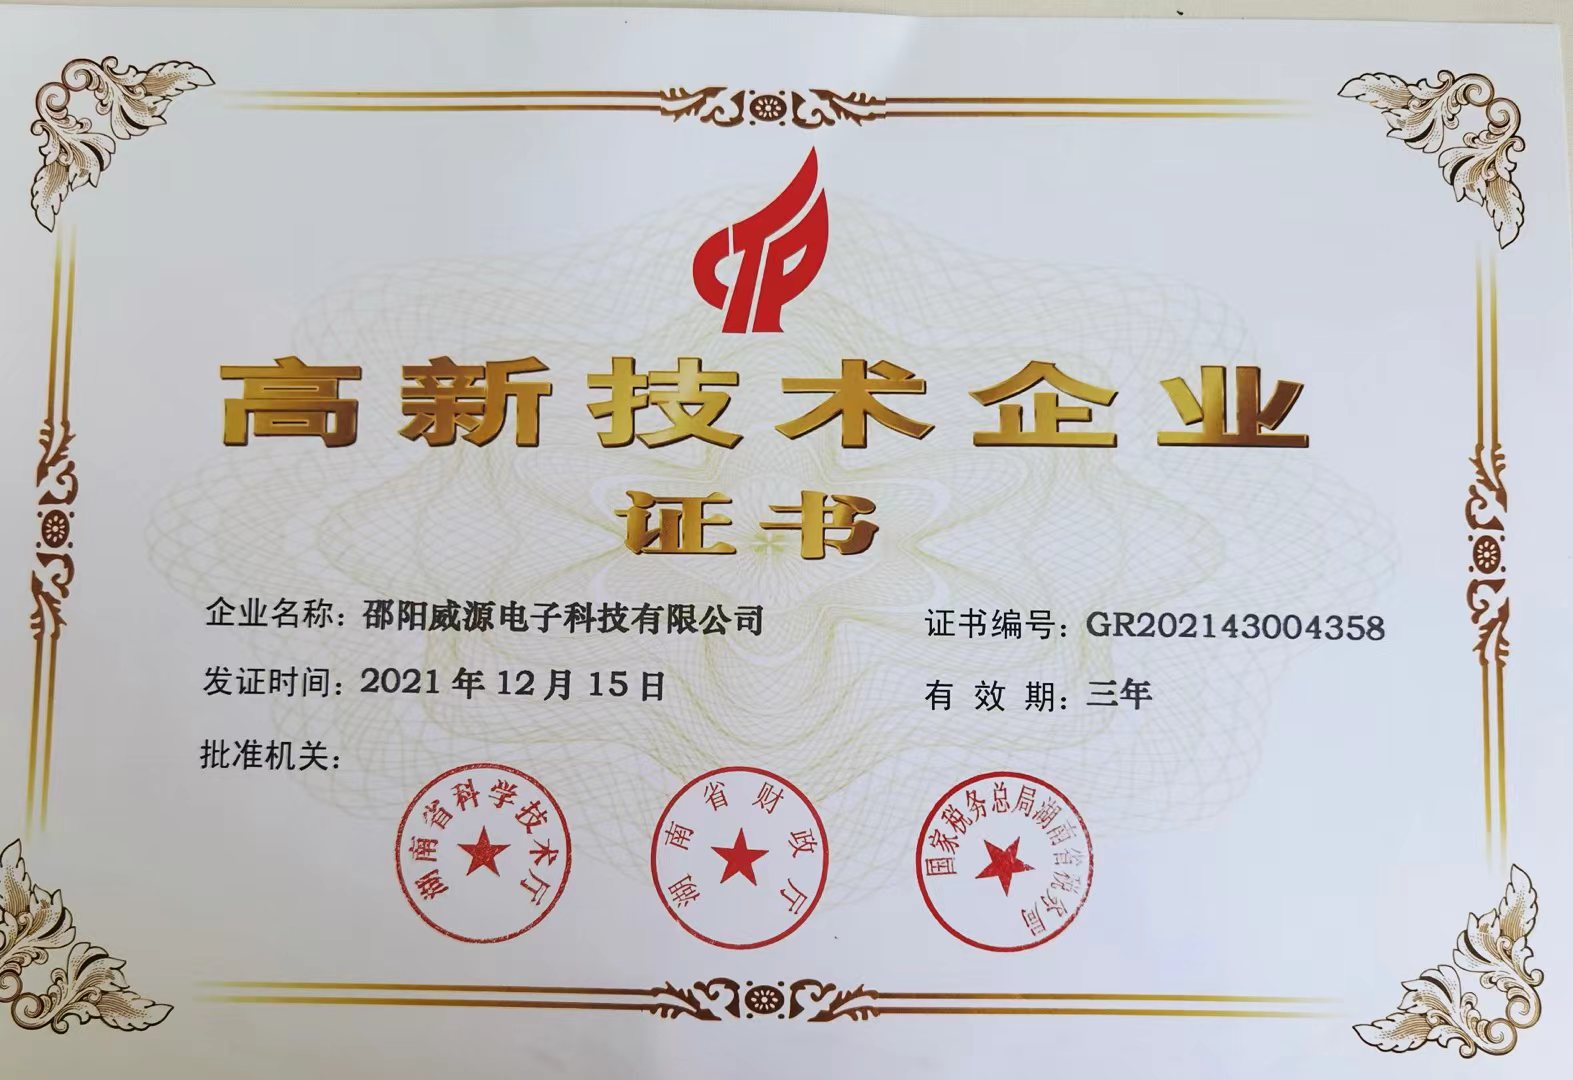 【新闻】我司邵阳威源电子荣获国家高新技术企业认证